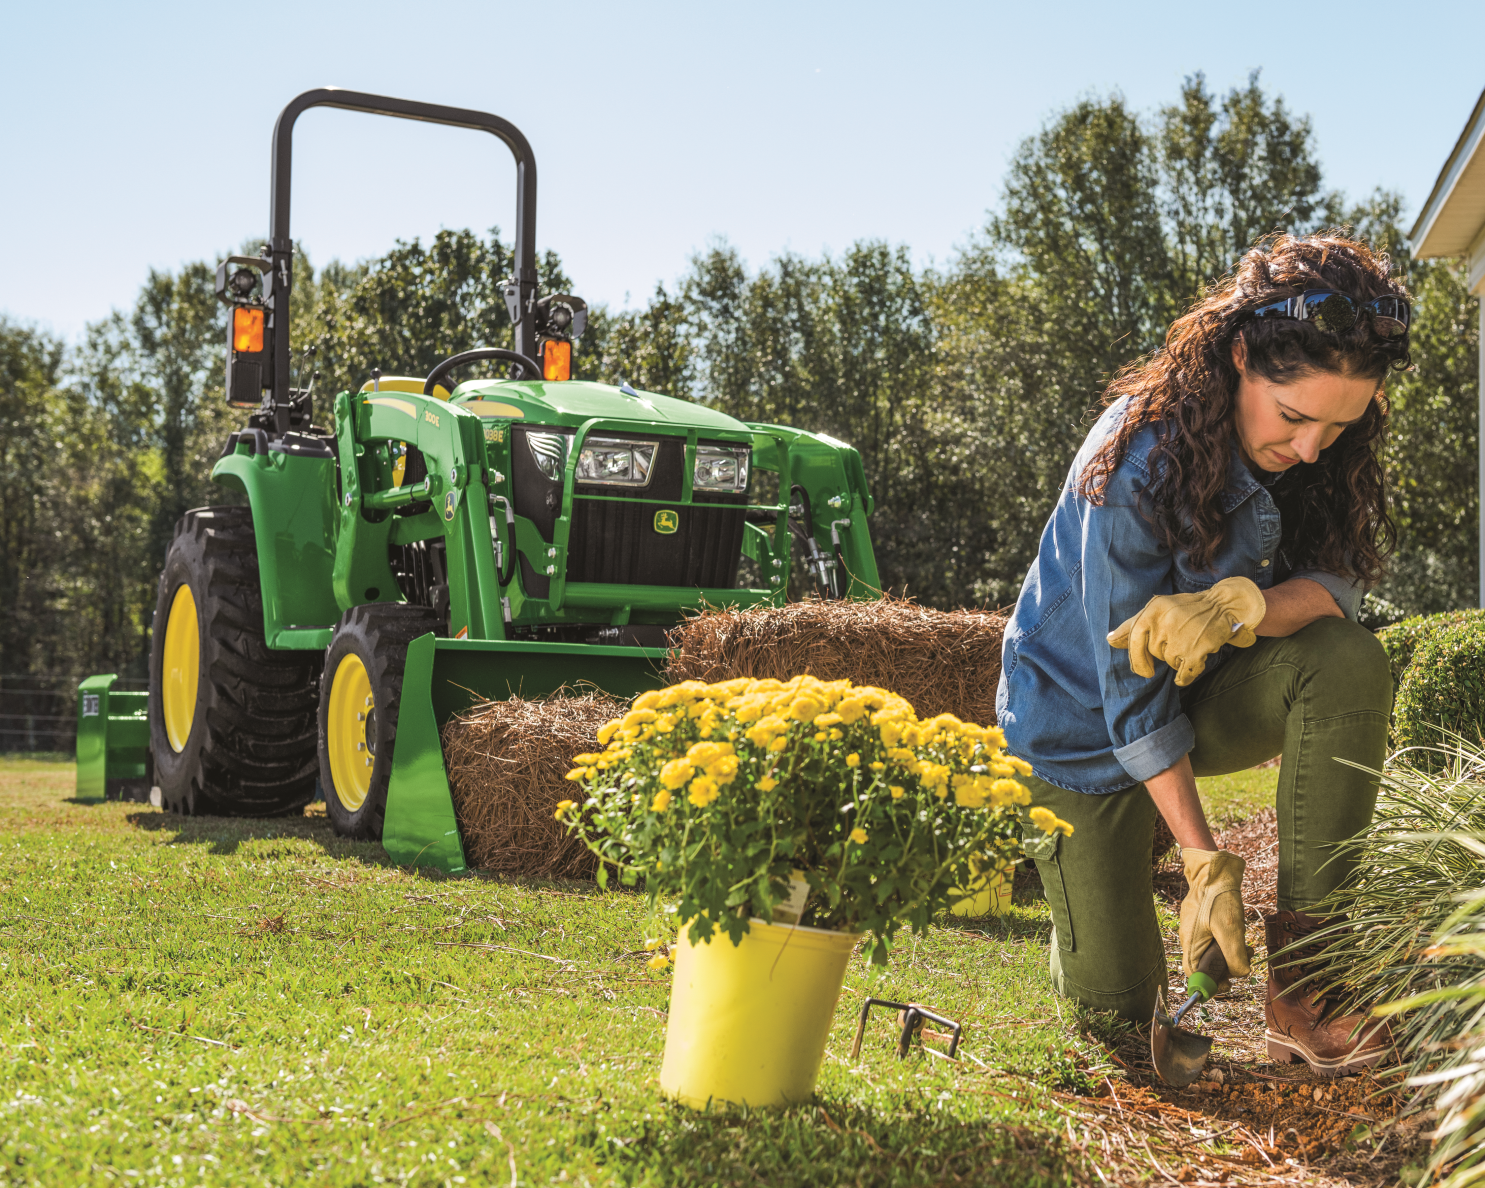 John Deere Landscaping Tractor with a Gardener